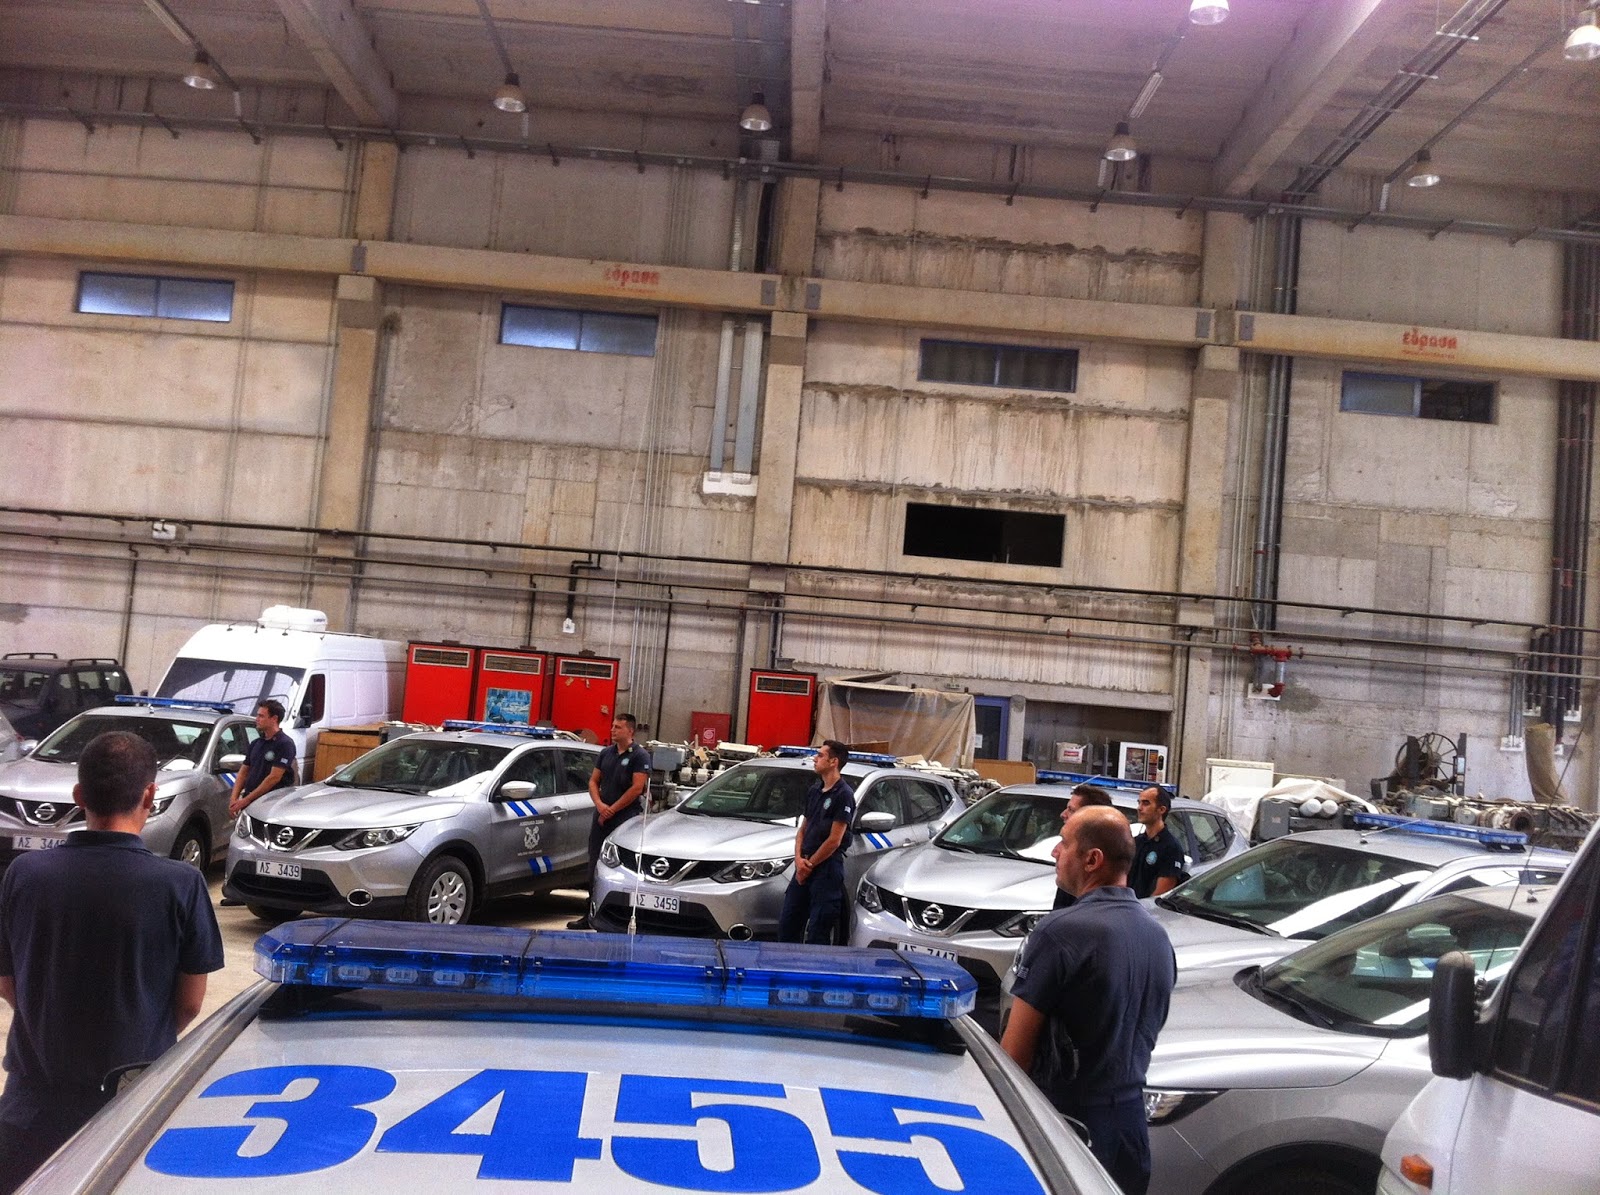 Παραλαβή 45 νέων περιπολικών Nissan QASHQAI 1.6 dCi 4X4, από τo Λιμενικό Σώμα - Φωτογραφία 2